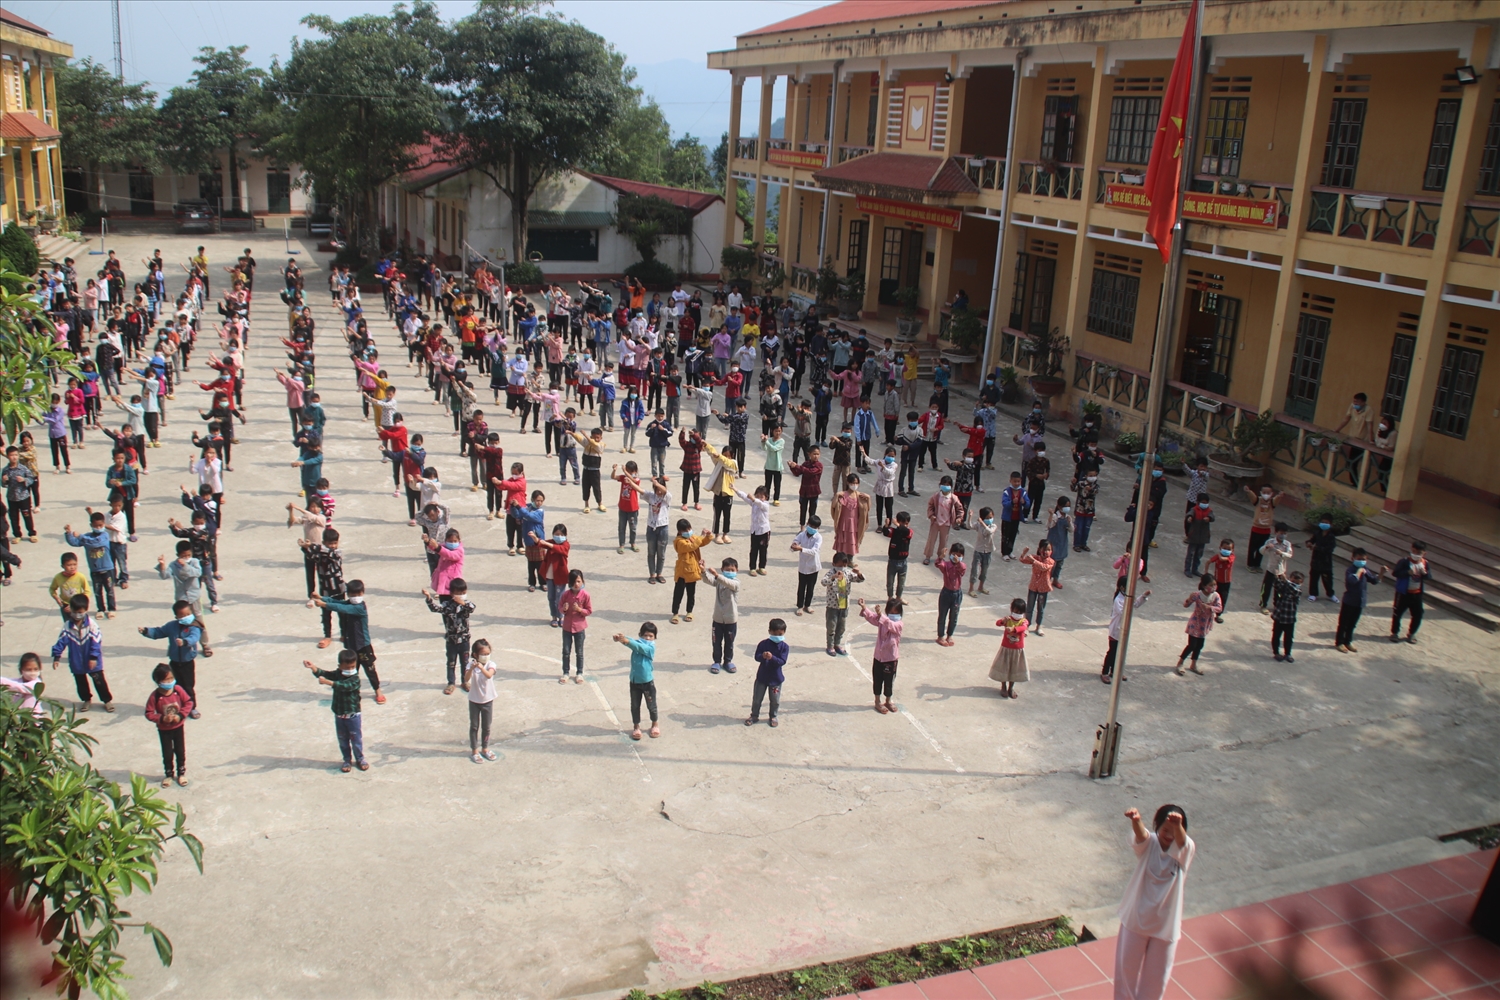 Bài thể dục giữa giờ của tập thể học sinh trường PTDT Bán trú Tiểu học và THCS A Mú Sung, xã A Mú Sung, huyện Bát Xát, tỉnh Lào Cai